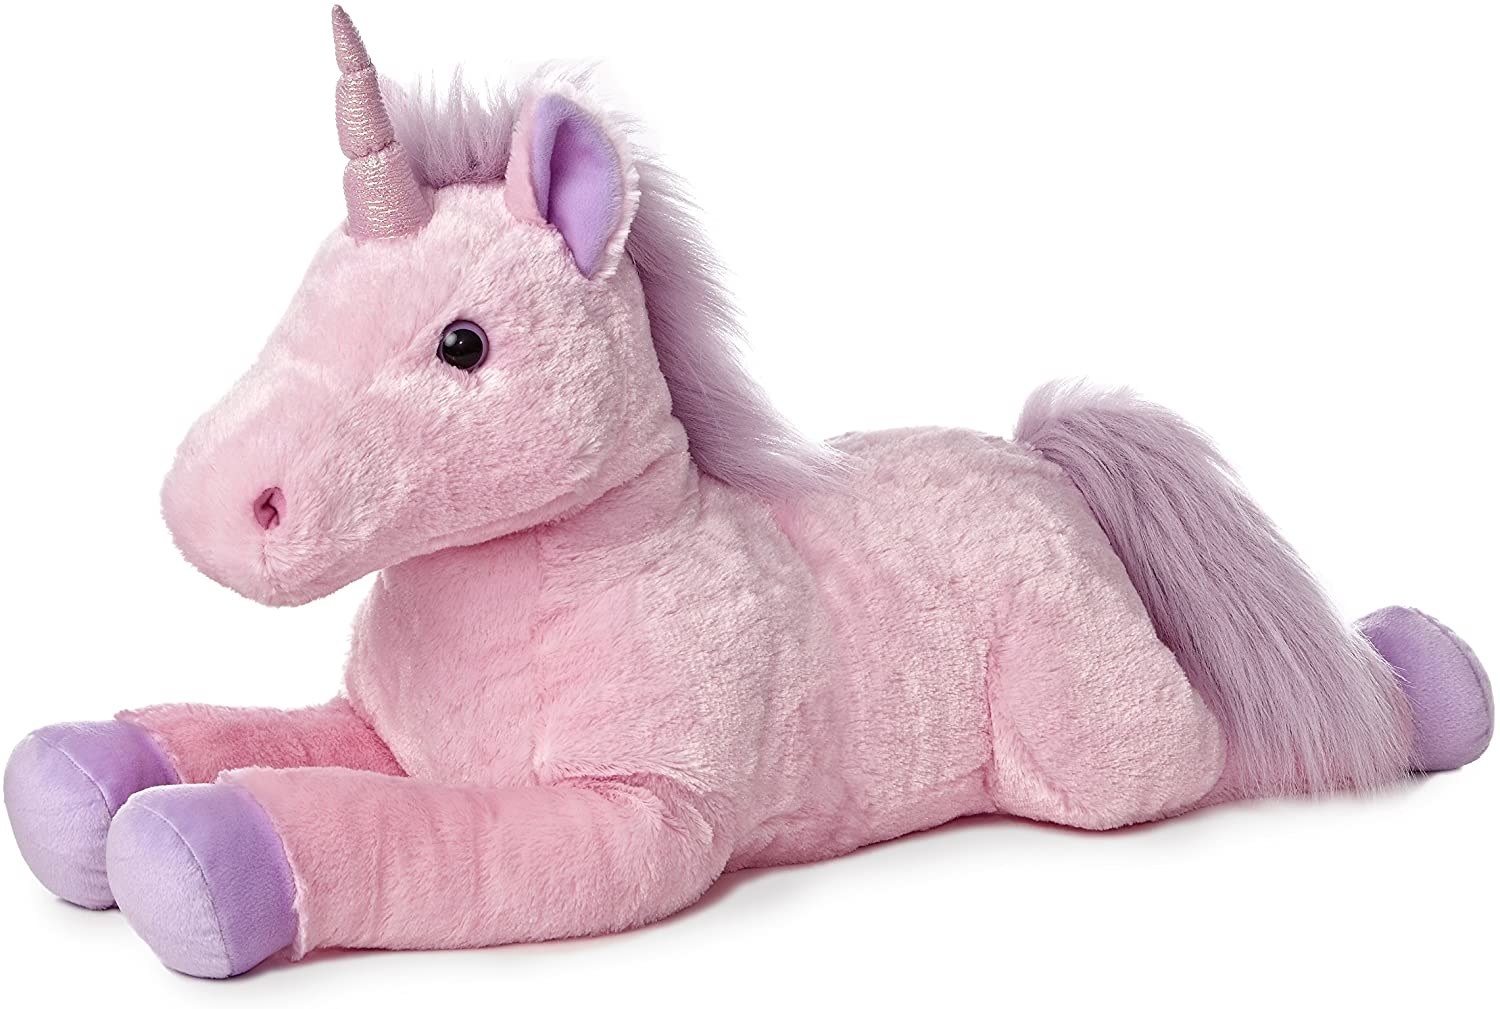 A large stuffed unicorn  toy